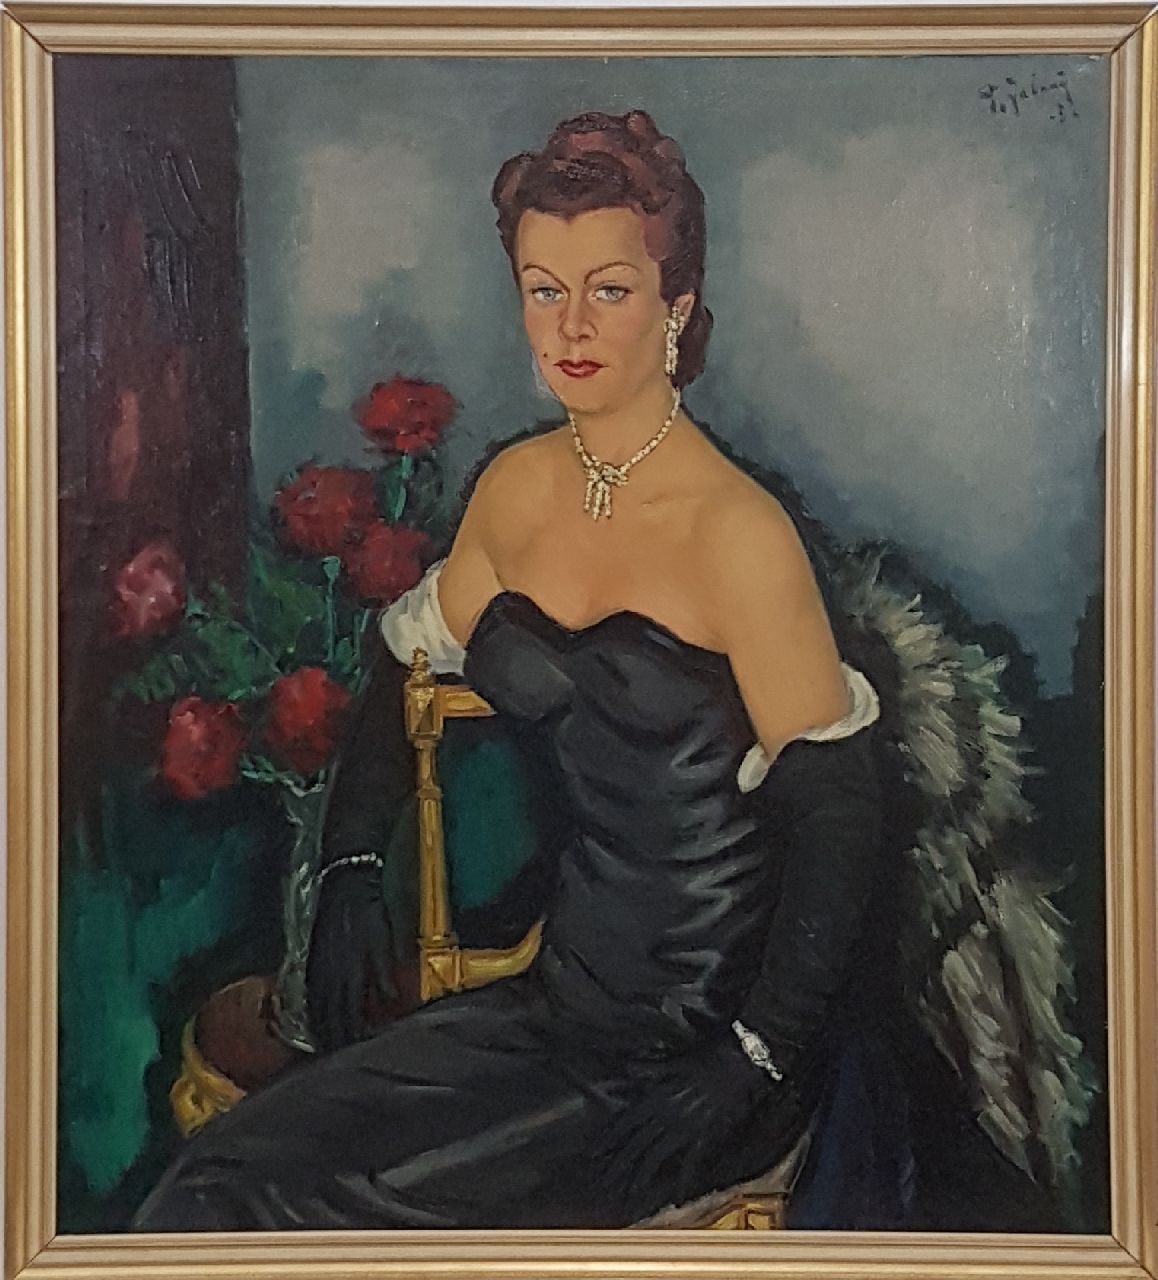 Jabaaij P.  | Piet 'Pleun' Jabaaij | Schilderijen te koop aangeboden | Portret van een vrouw in avondkleding, olieverf op doek 100,0 x 99,8 cm, gesigneerd rechtsboven en gedateerd '52